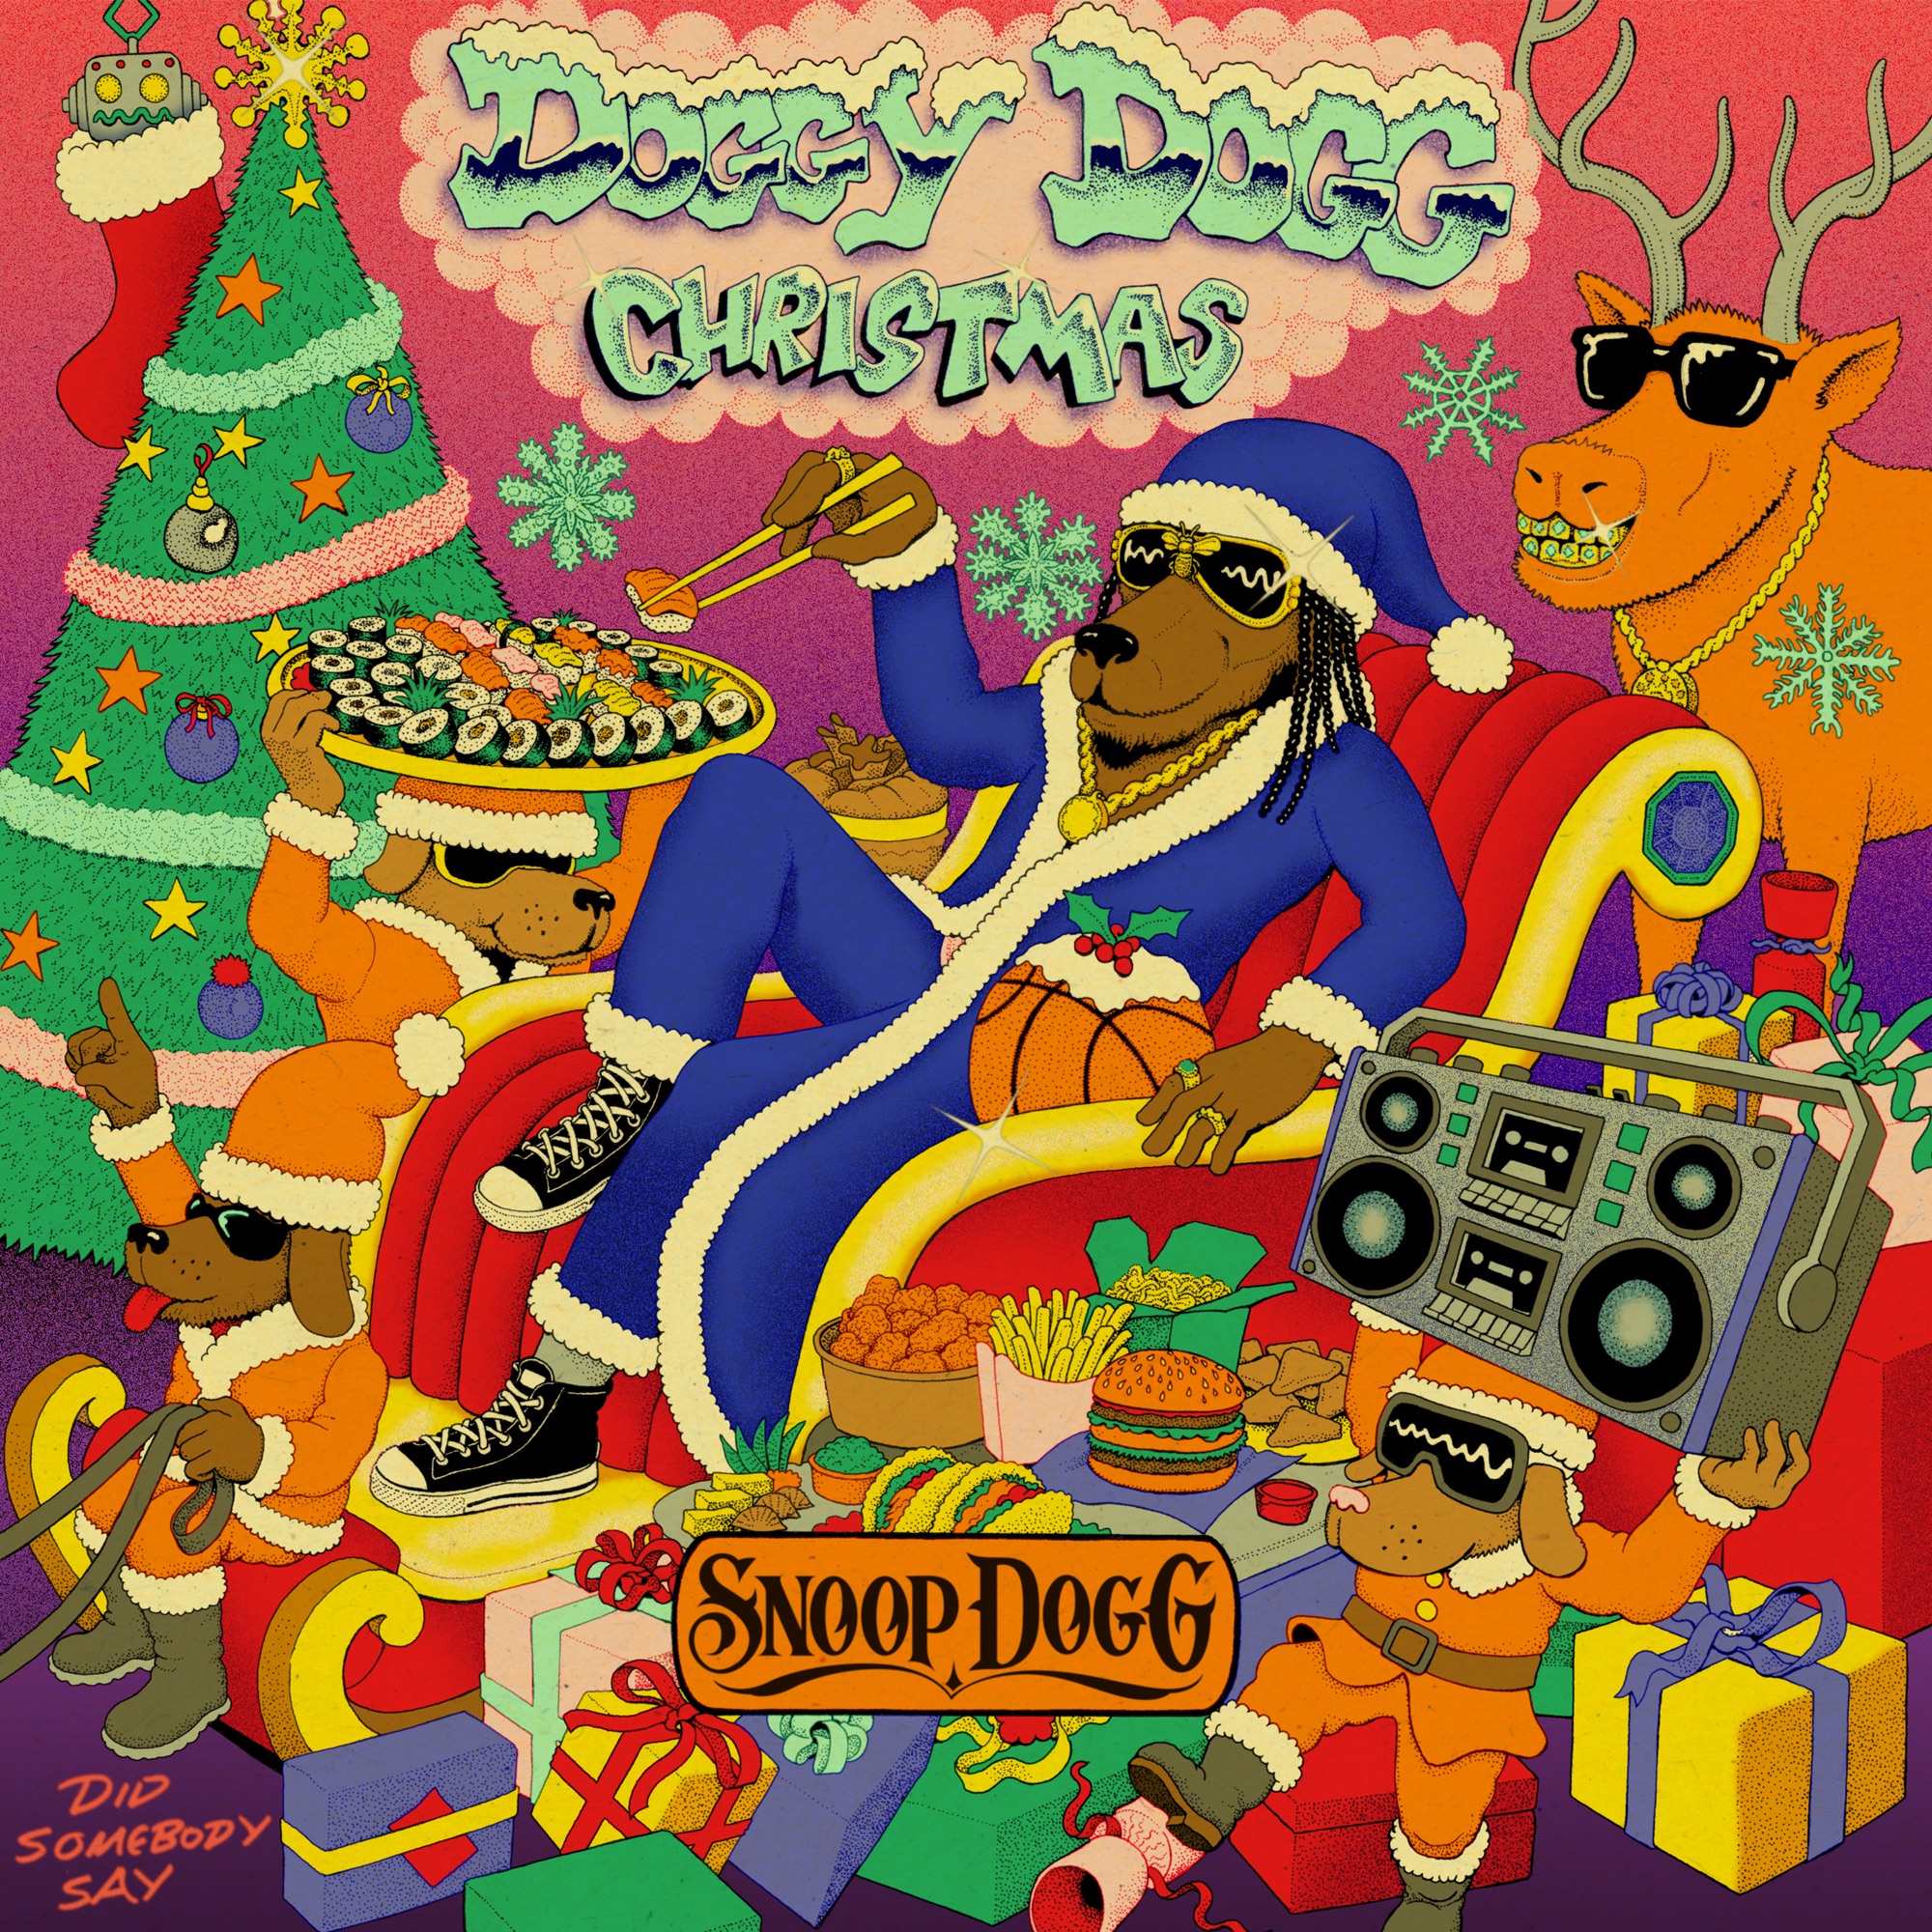 Snoop Dogg - Doggy Dogg Christmas - Single